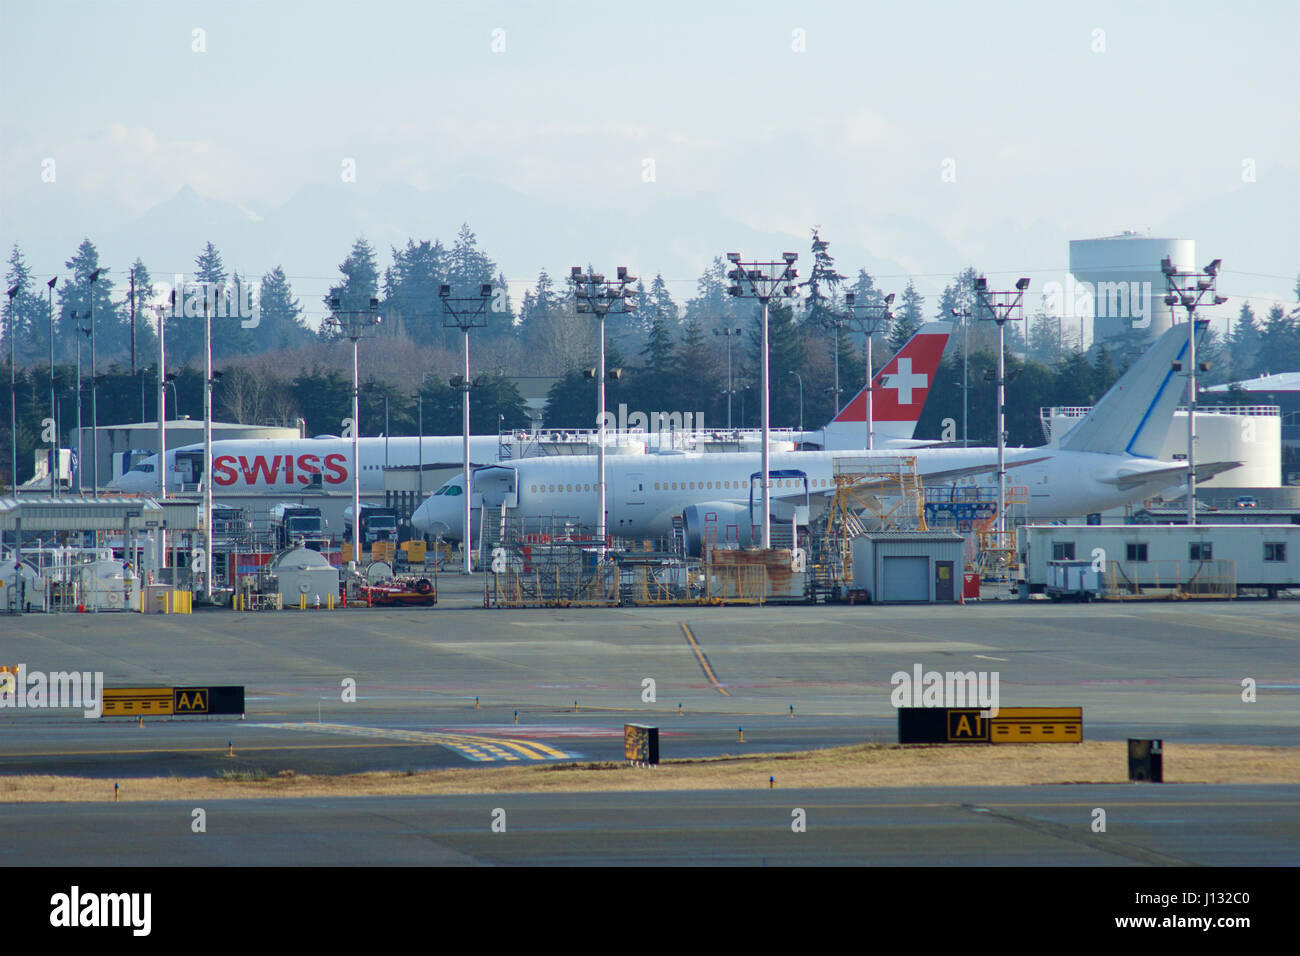 EVERETT, Washington, USA - JAN 26th, 2017 : le site de production de Boeing, l'énorme usine à Snohomish Comté ou l'aéroport de Paine Field, un tout nouveau B777 suisse et un B787 Dreamliner en arrière-plan Banque D'Images